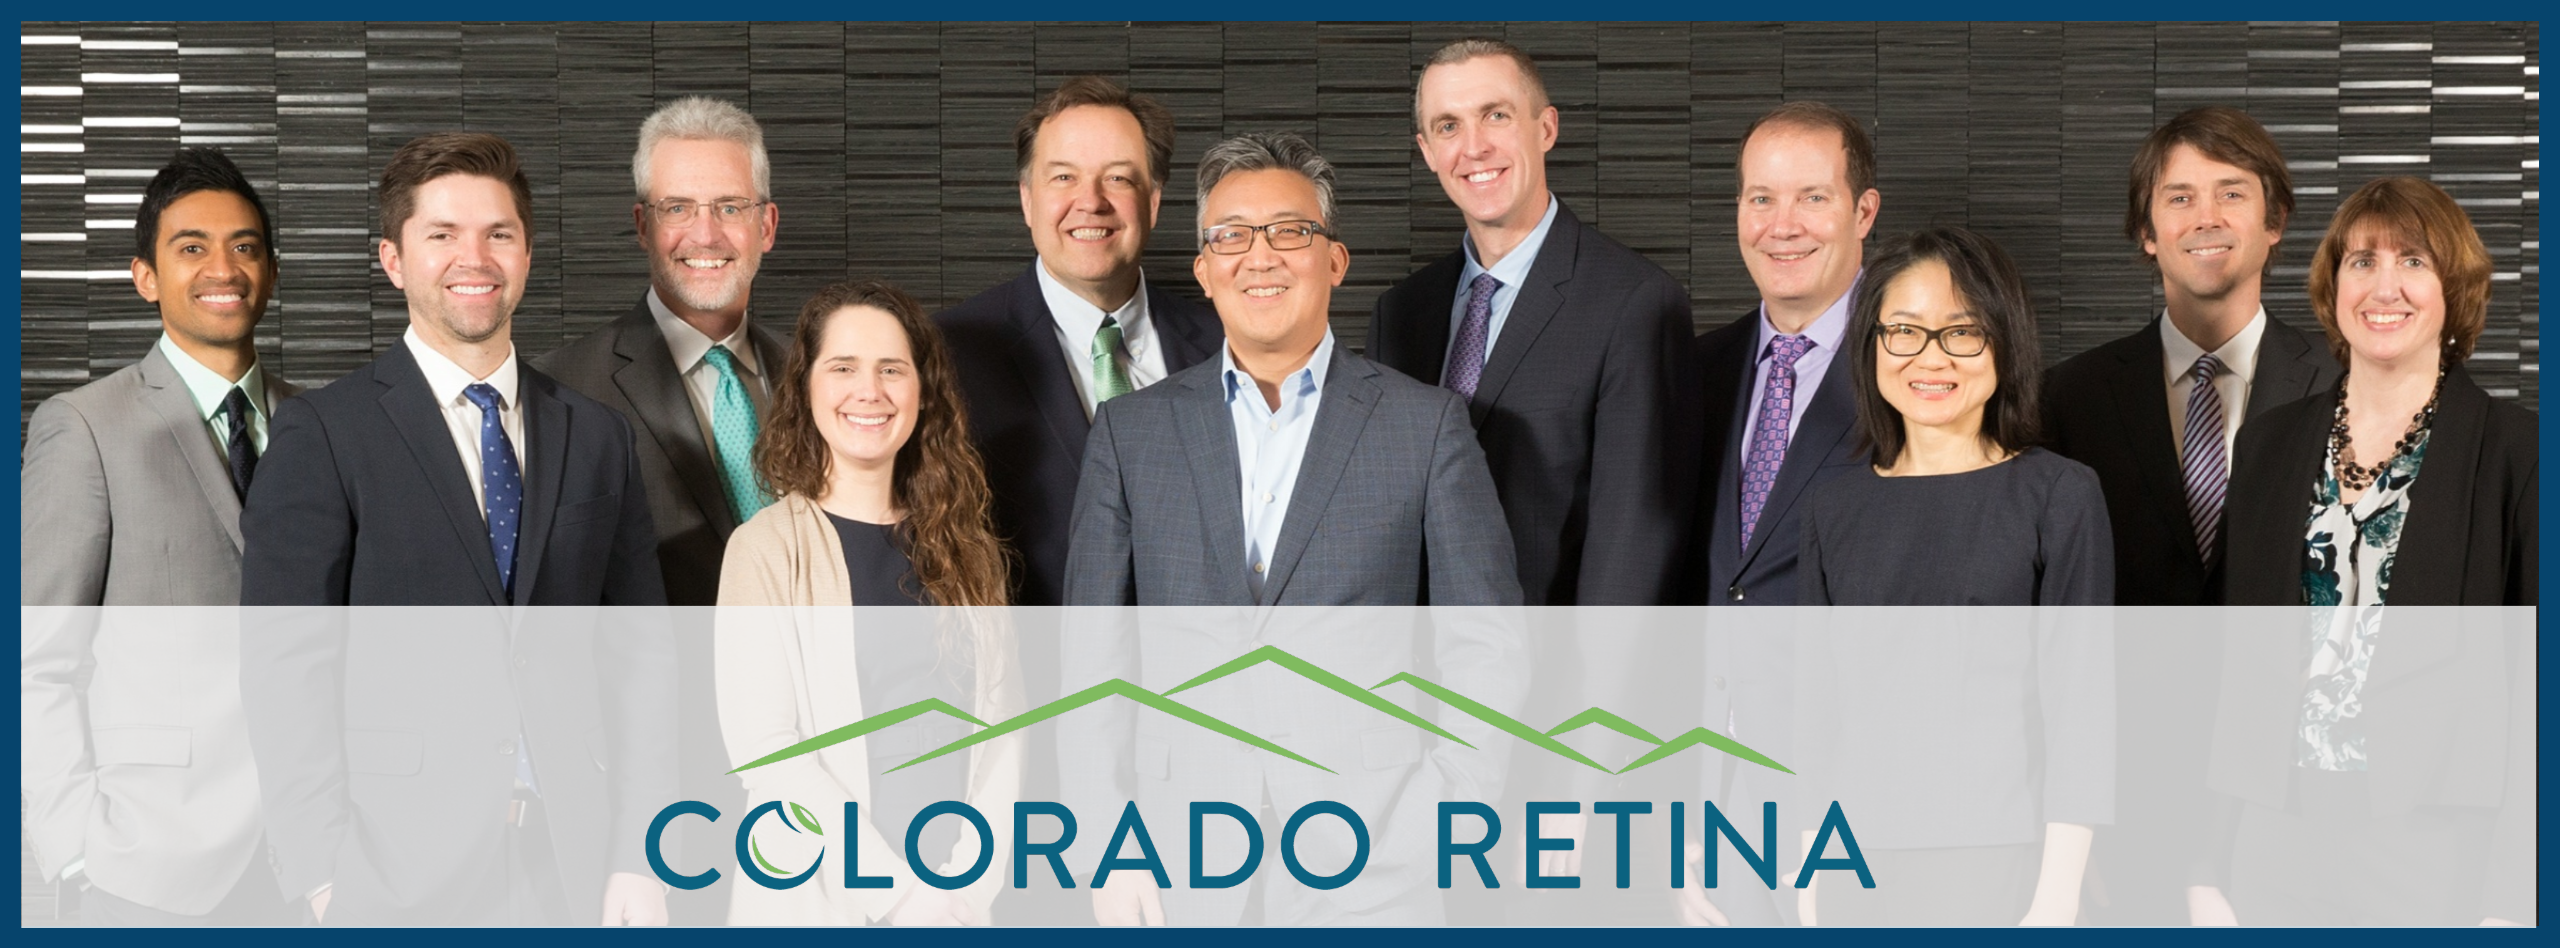 Colorado Retina - East Denver Clinic Photo